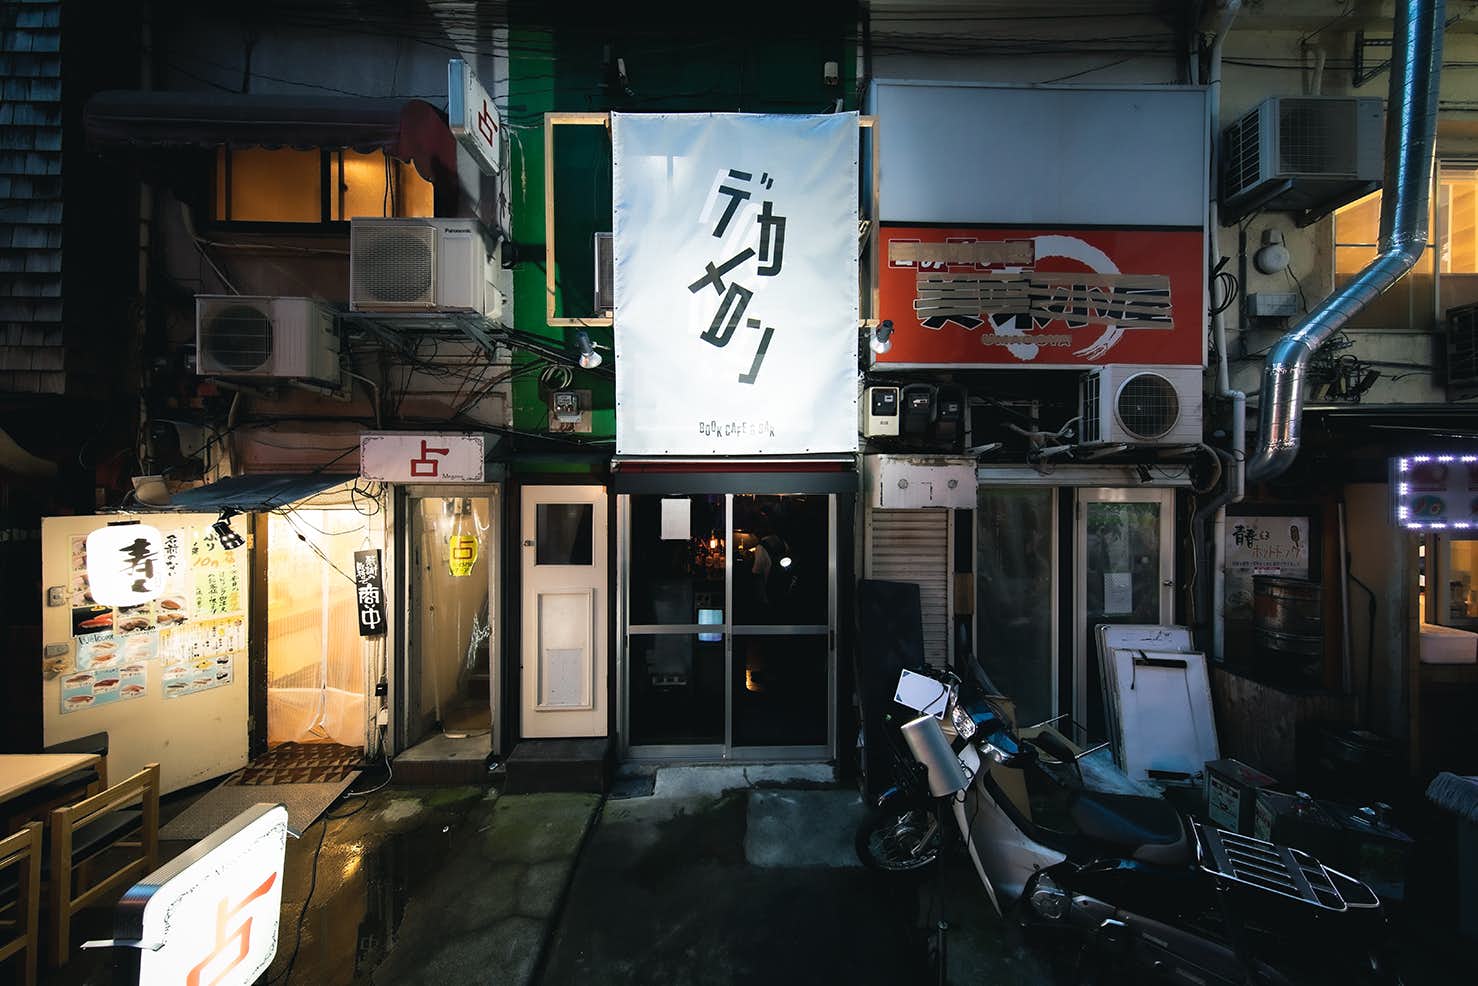 夜の街”歌舞伎町で「言葉」の展覧会を行うことの意味とは何か